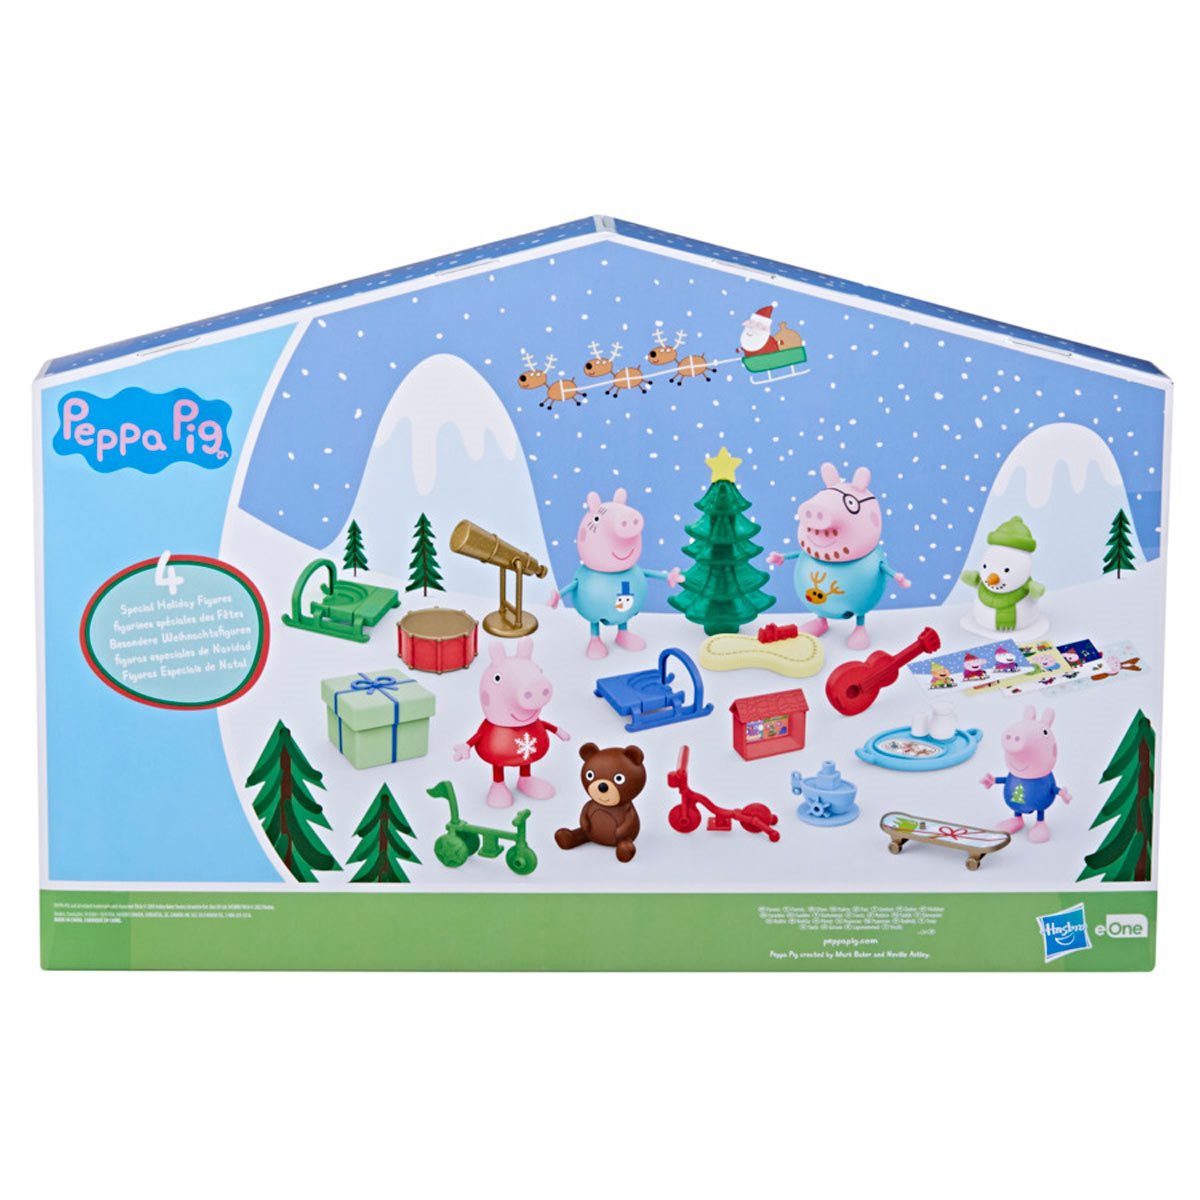 Includes Peppa Pig Toys and Figures Peppa Pig Advent Calendar Christmas XMAS 